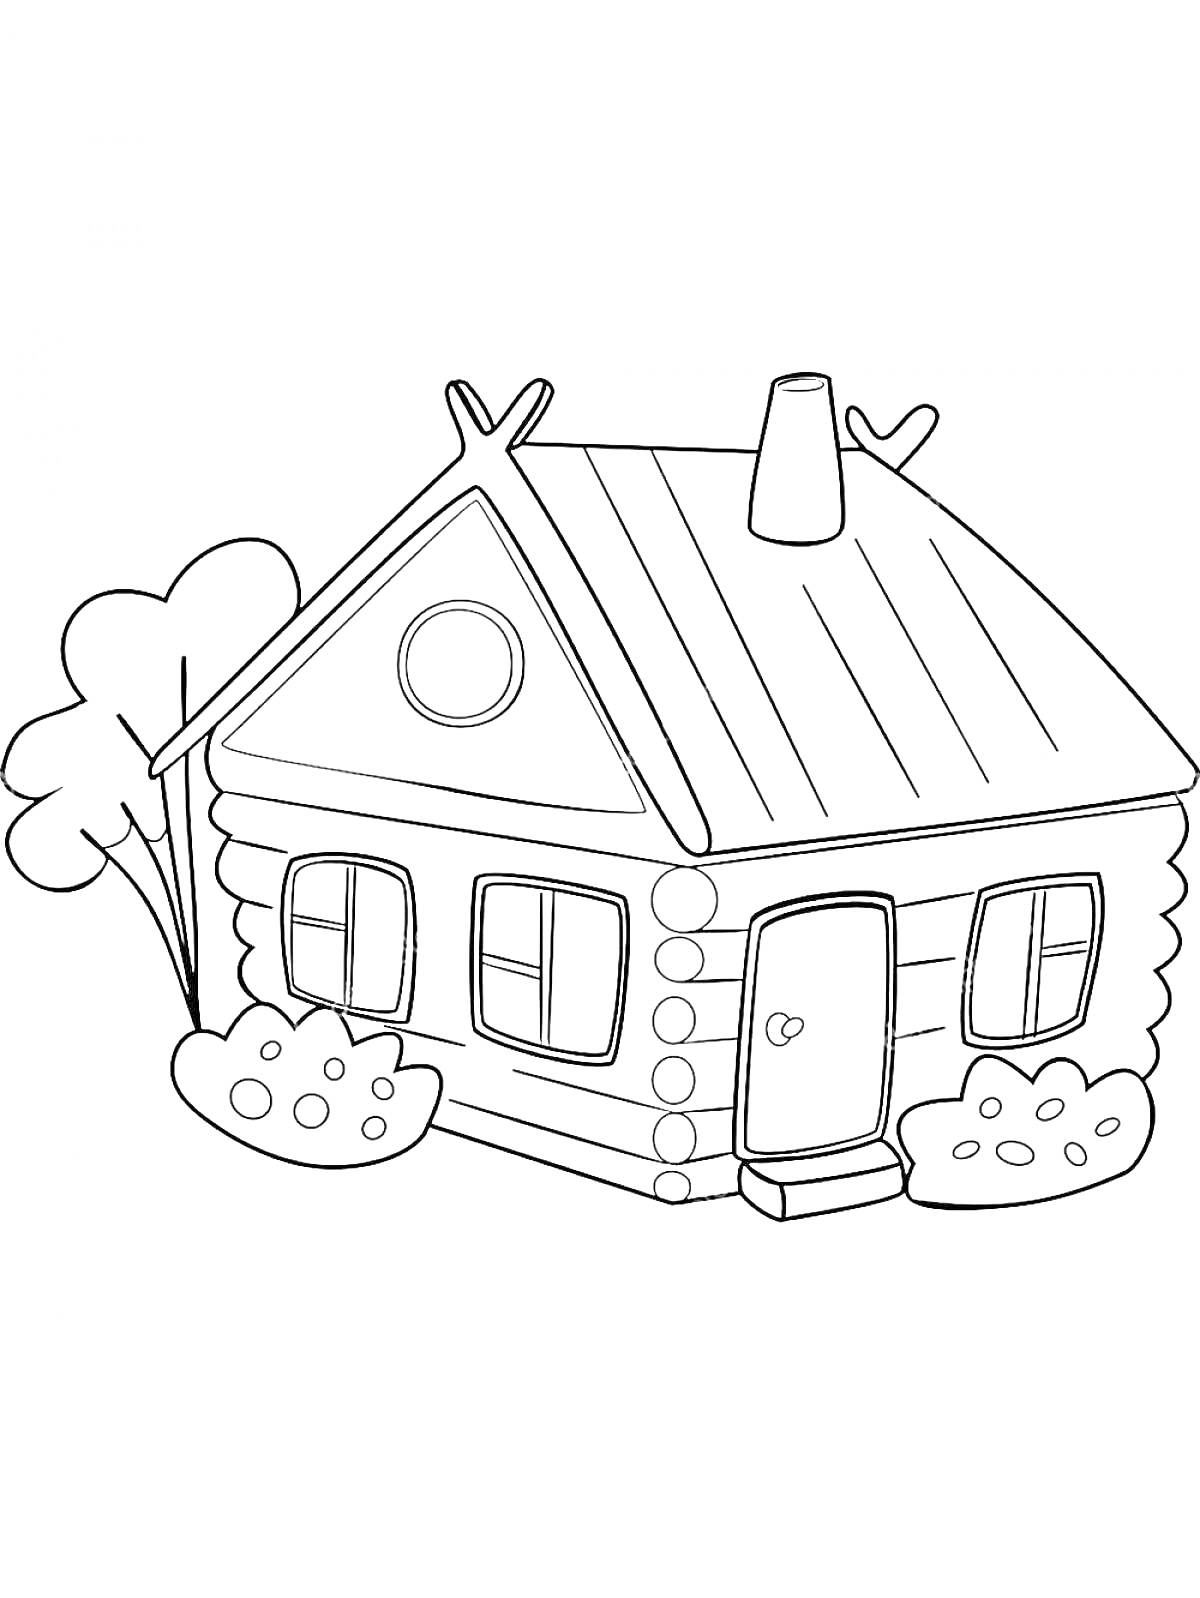 Раскраска Домик из бревен с трубой на крыше, двумя окнами и кустами перед домом